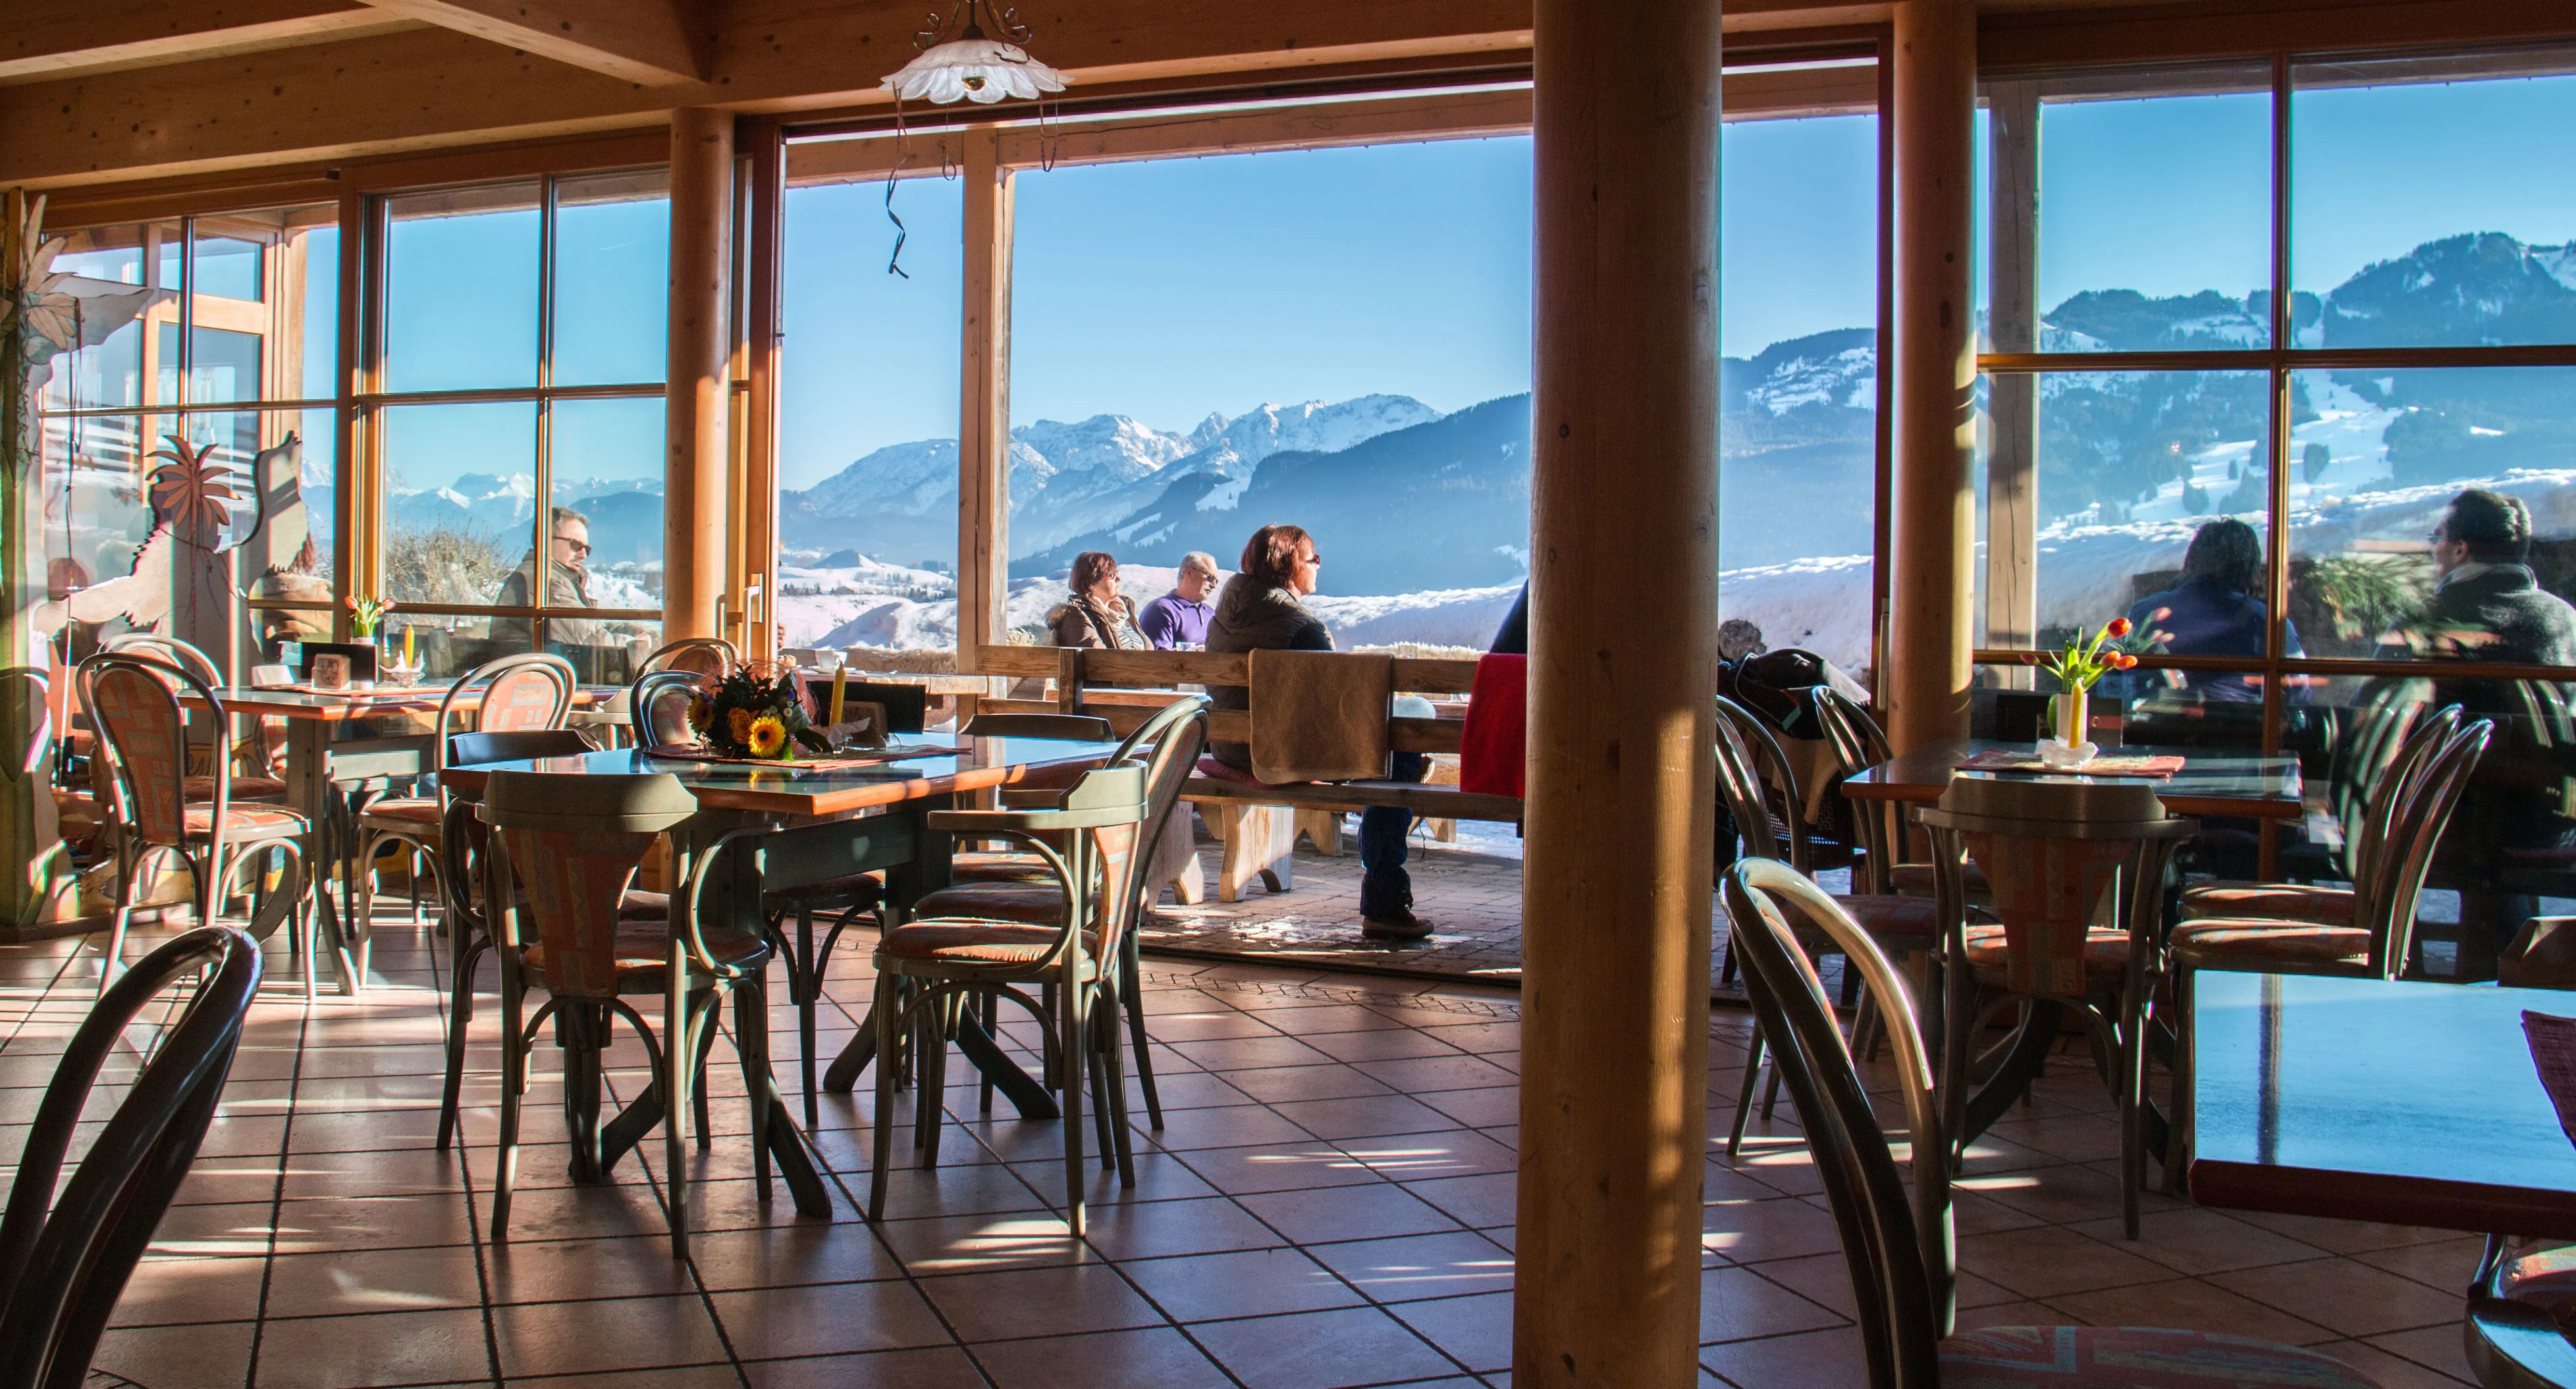 Aussicht aus dem innerem Gastraum, welches auf as Winter Alpenpanorama und verschiedene Menschen schaut.